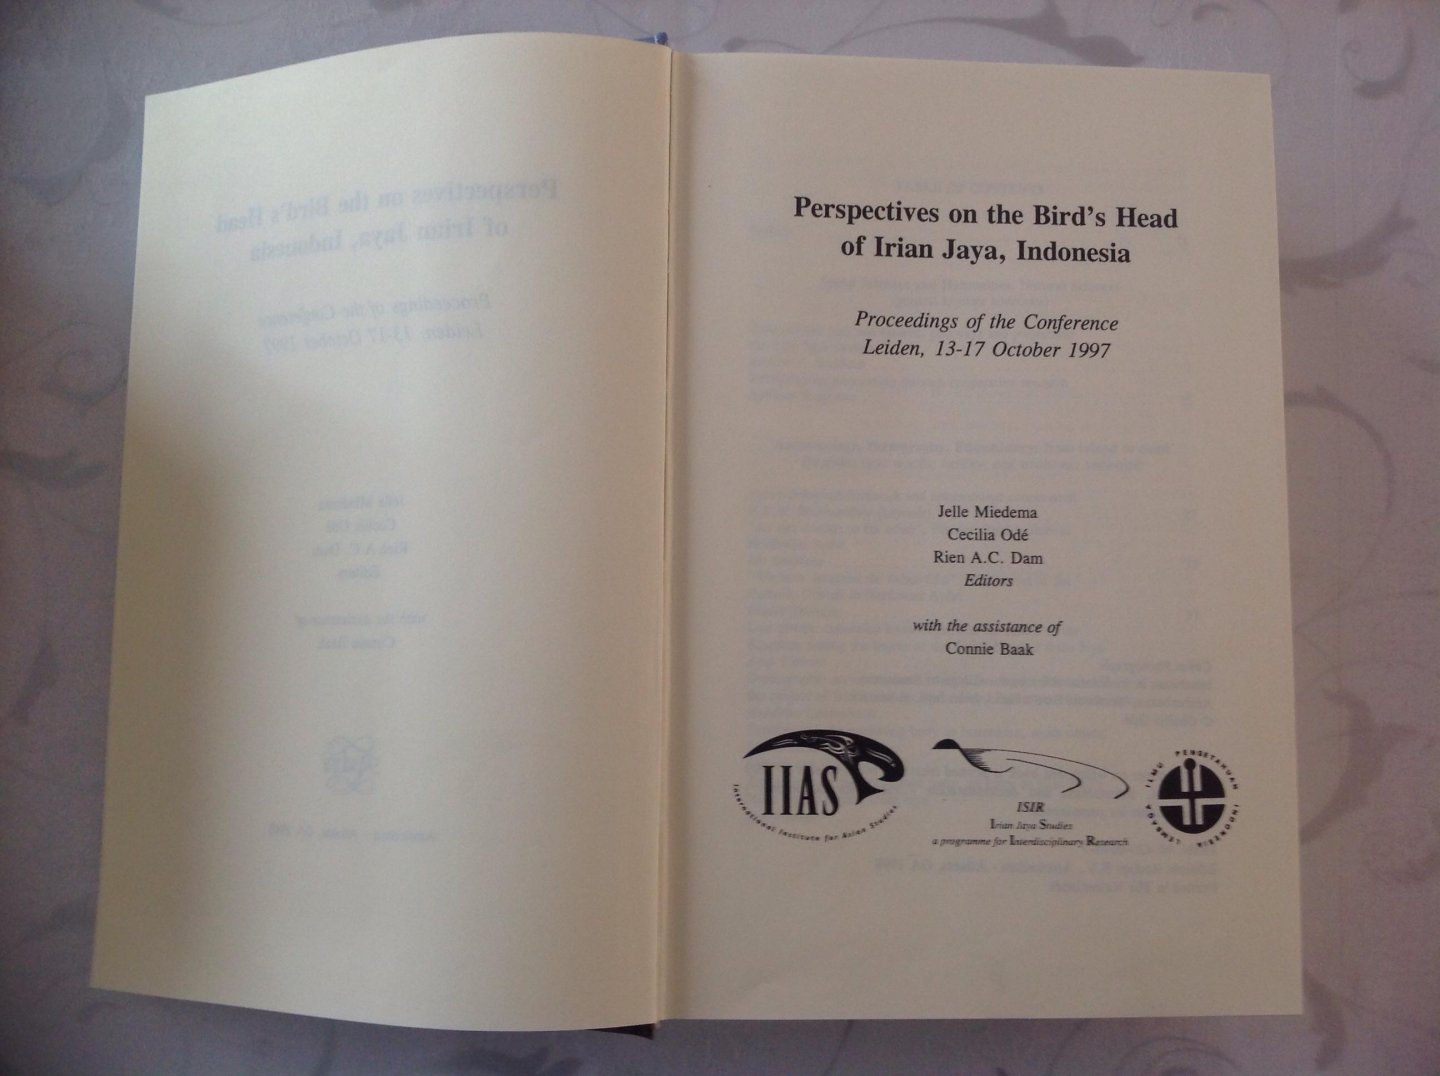 J. Miedema, C. Odé. R.A.C. Dam - Perspectives on the Bird's Head of Irian Jaya, Indonesia